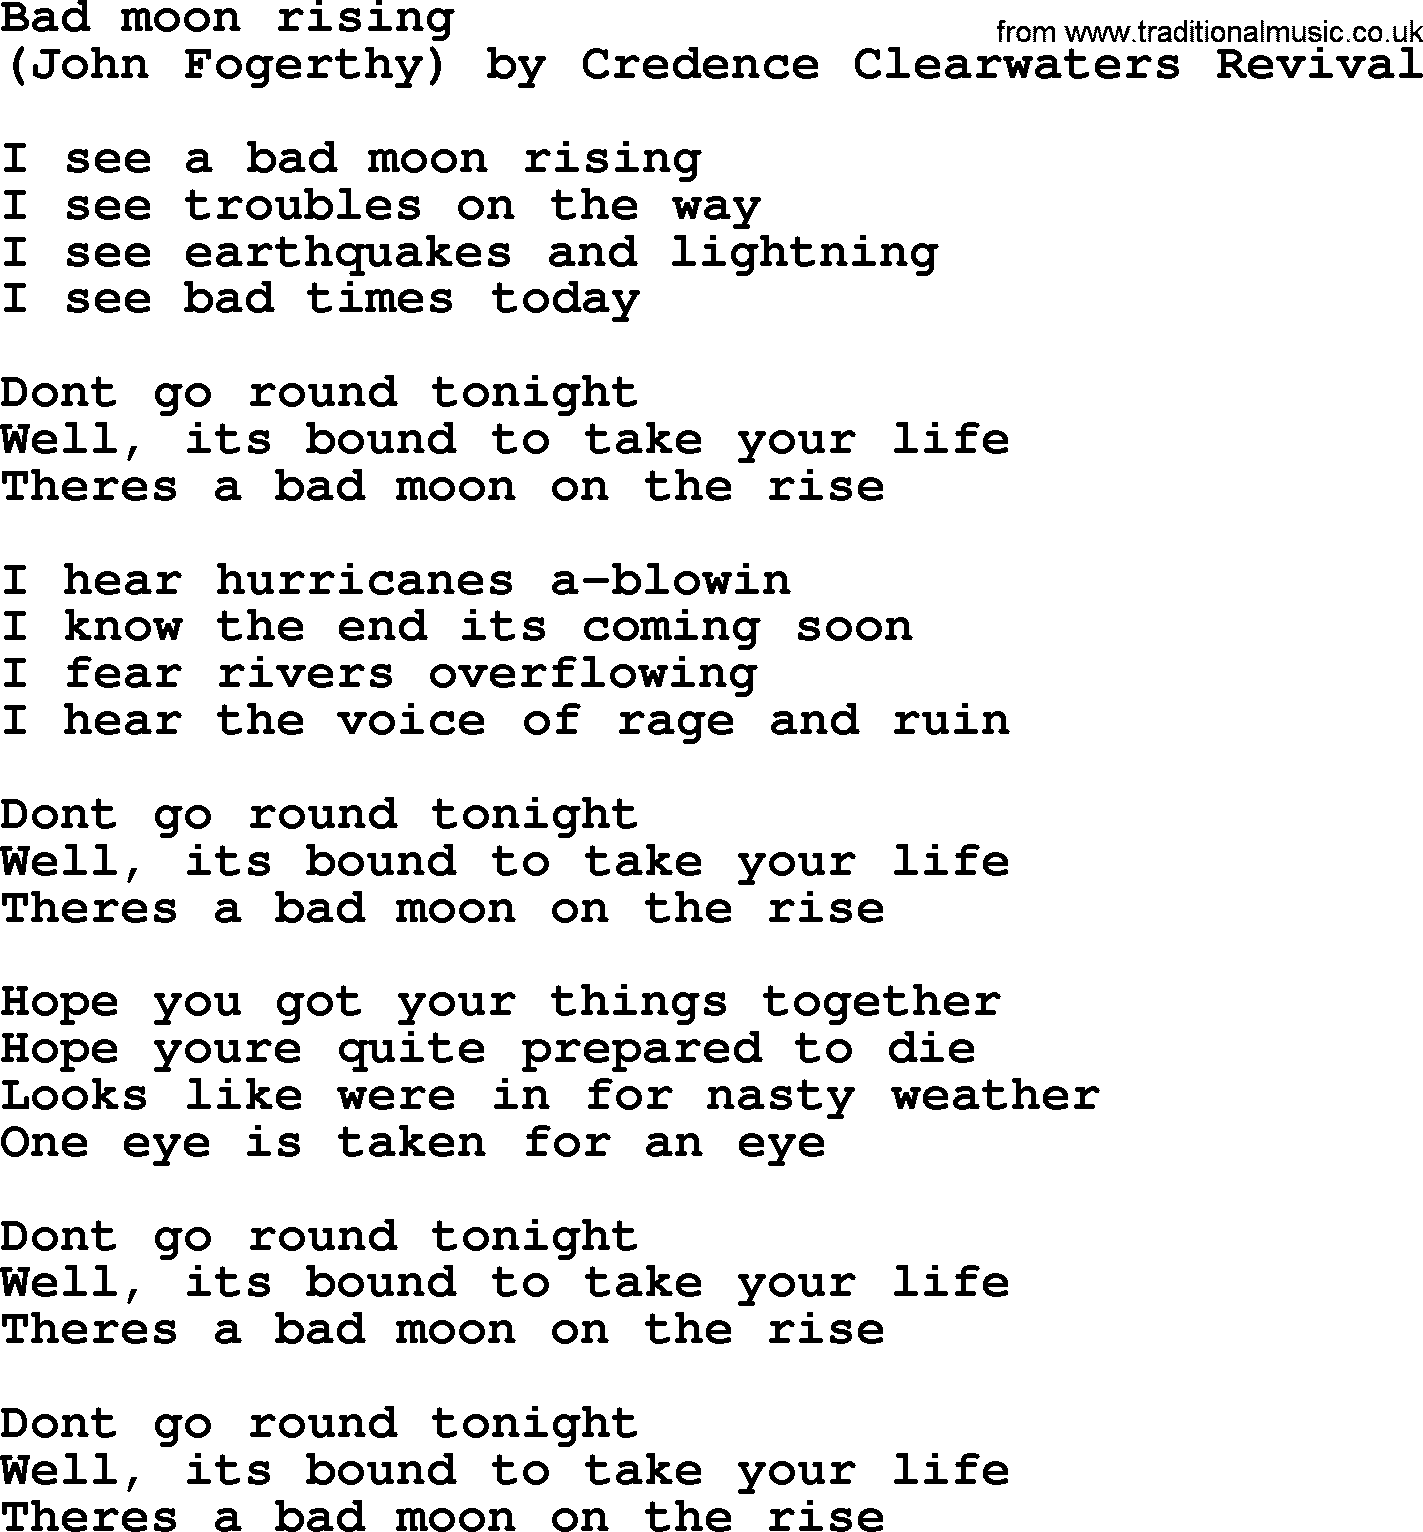 Bruce Springsteen song: Bad Moon Rising lyrics